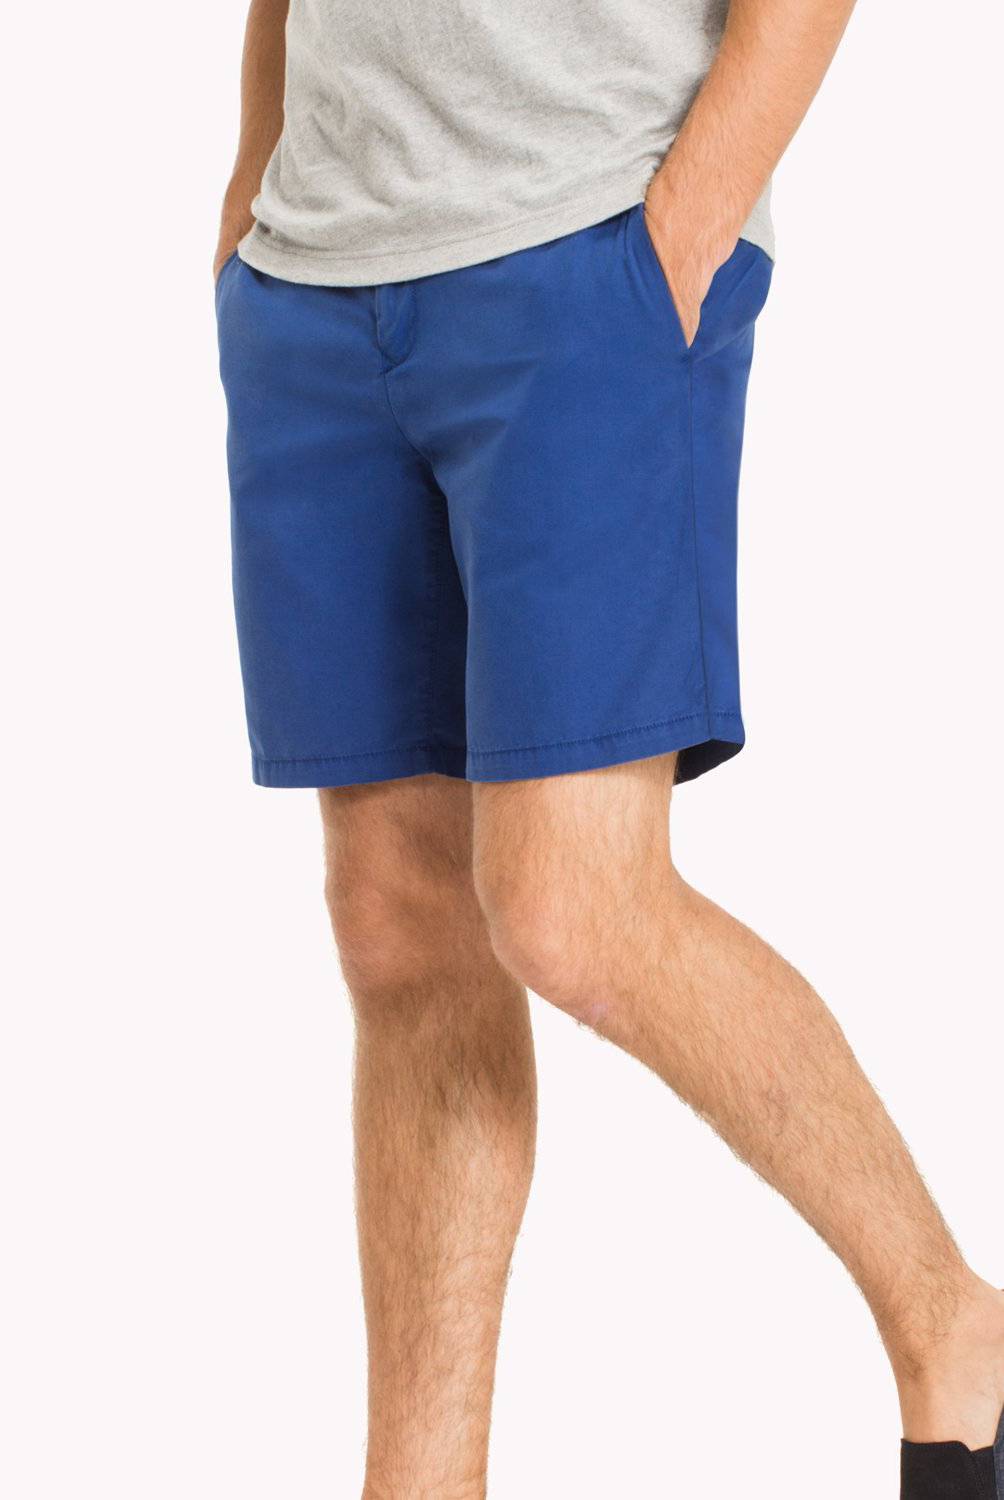 TOMMY HILFIGER - Shorts con Cinta Distintiva y Corte Regular